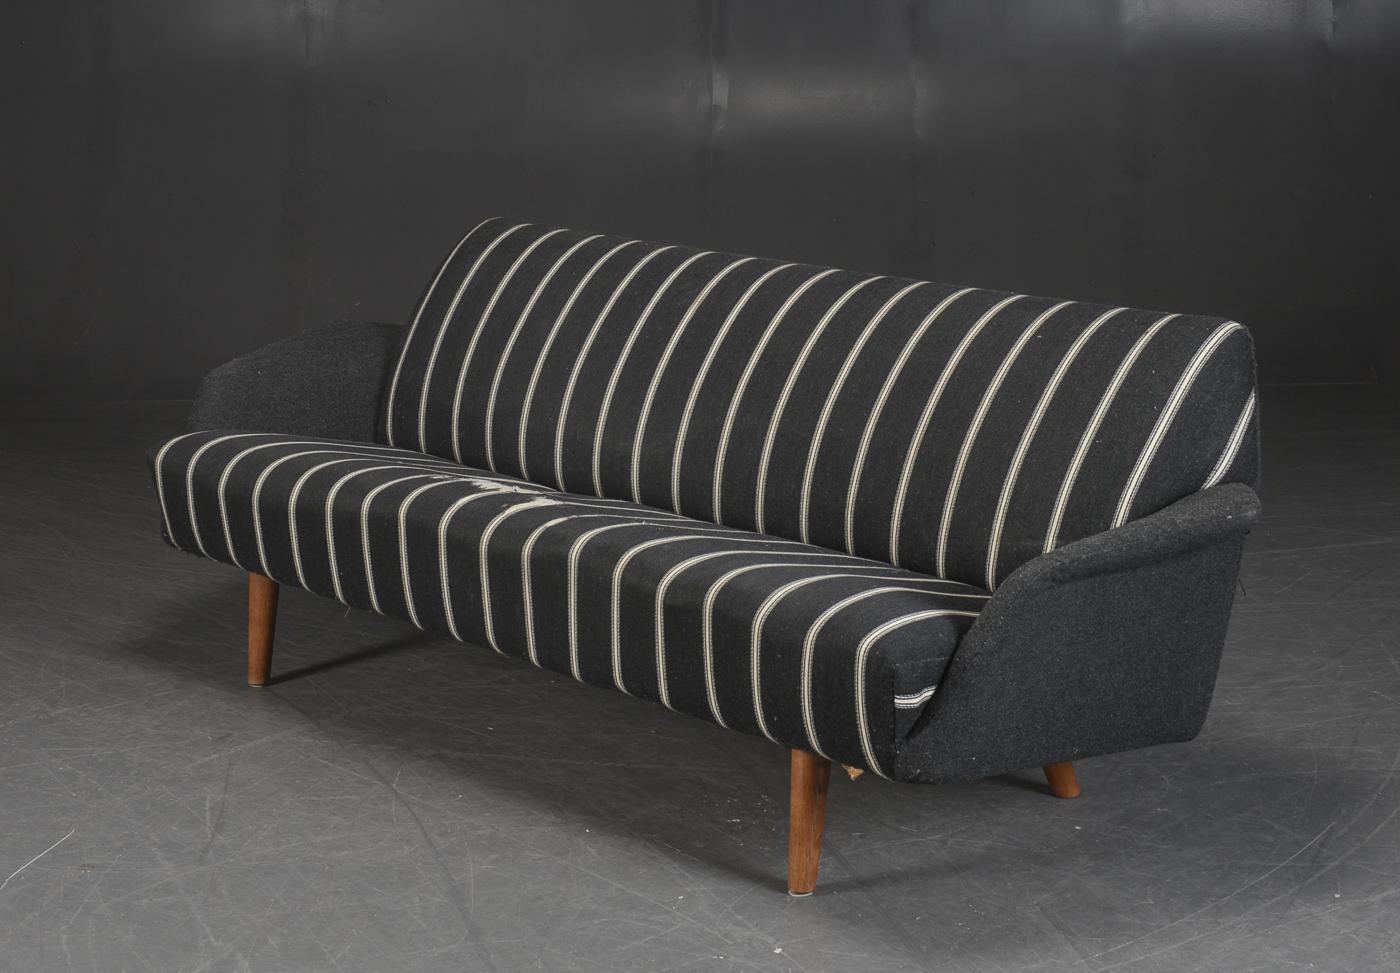 Superbe grand canapé danois moderne des années 1960 conçu par Illum Wikkelso comme modèle 444 pour Aarhus Møbelfabri au début des années 1960. Les canapés conçus par Wikkelso dans les années 1960 étaient vraiment parmi les canapés les plus cool et